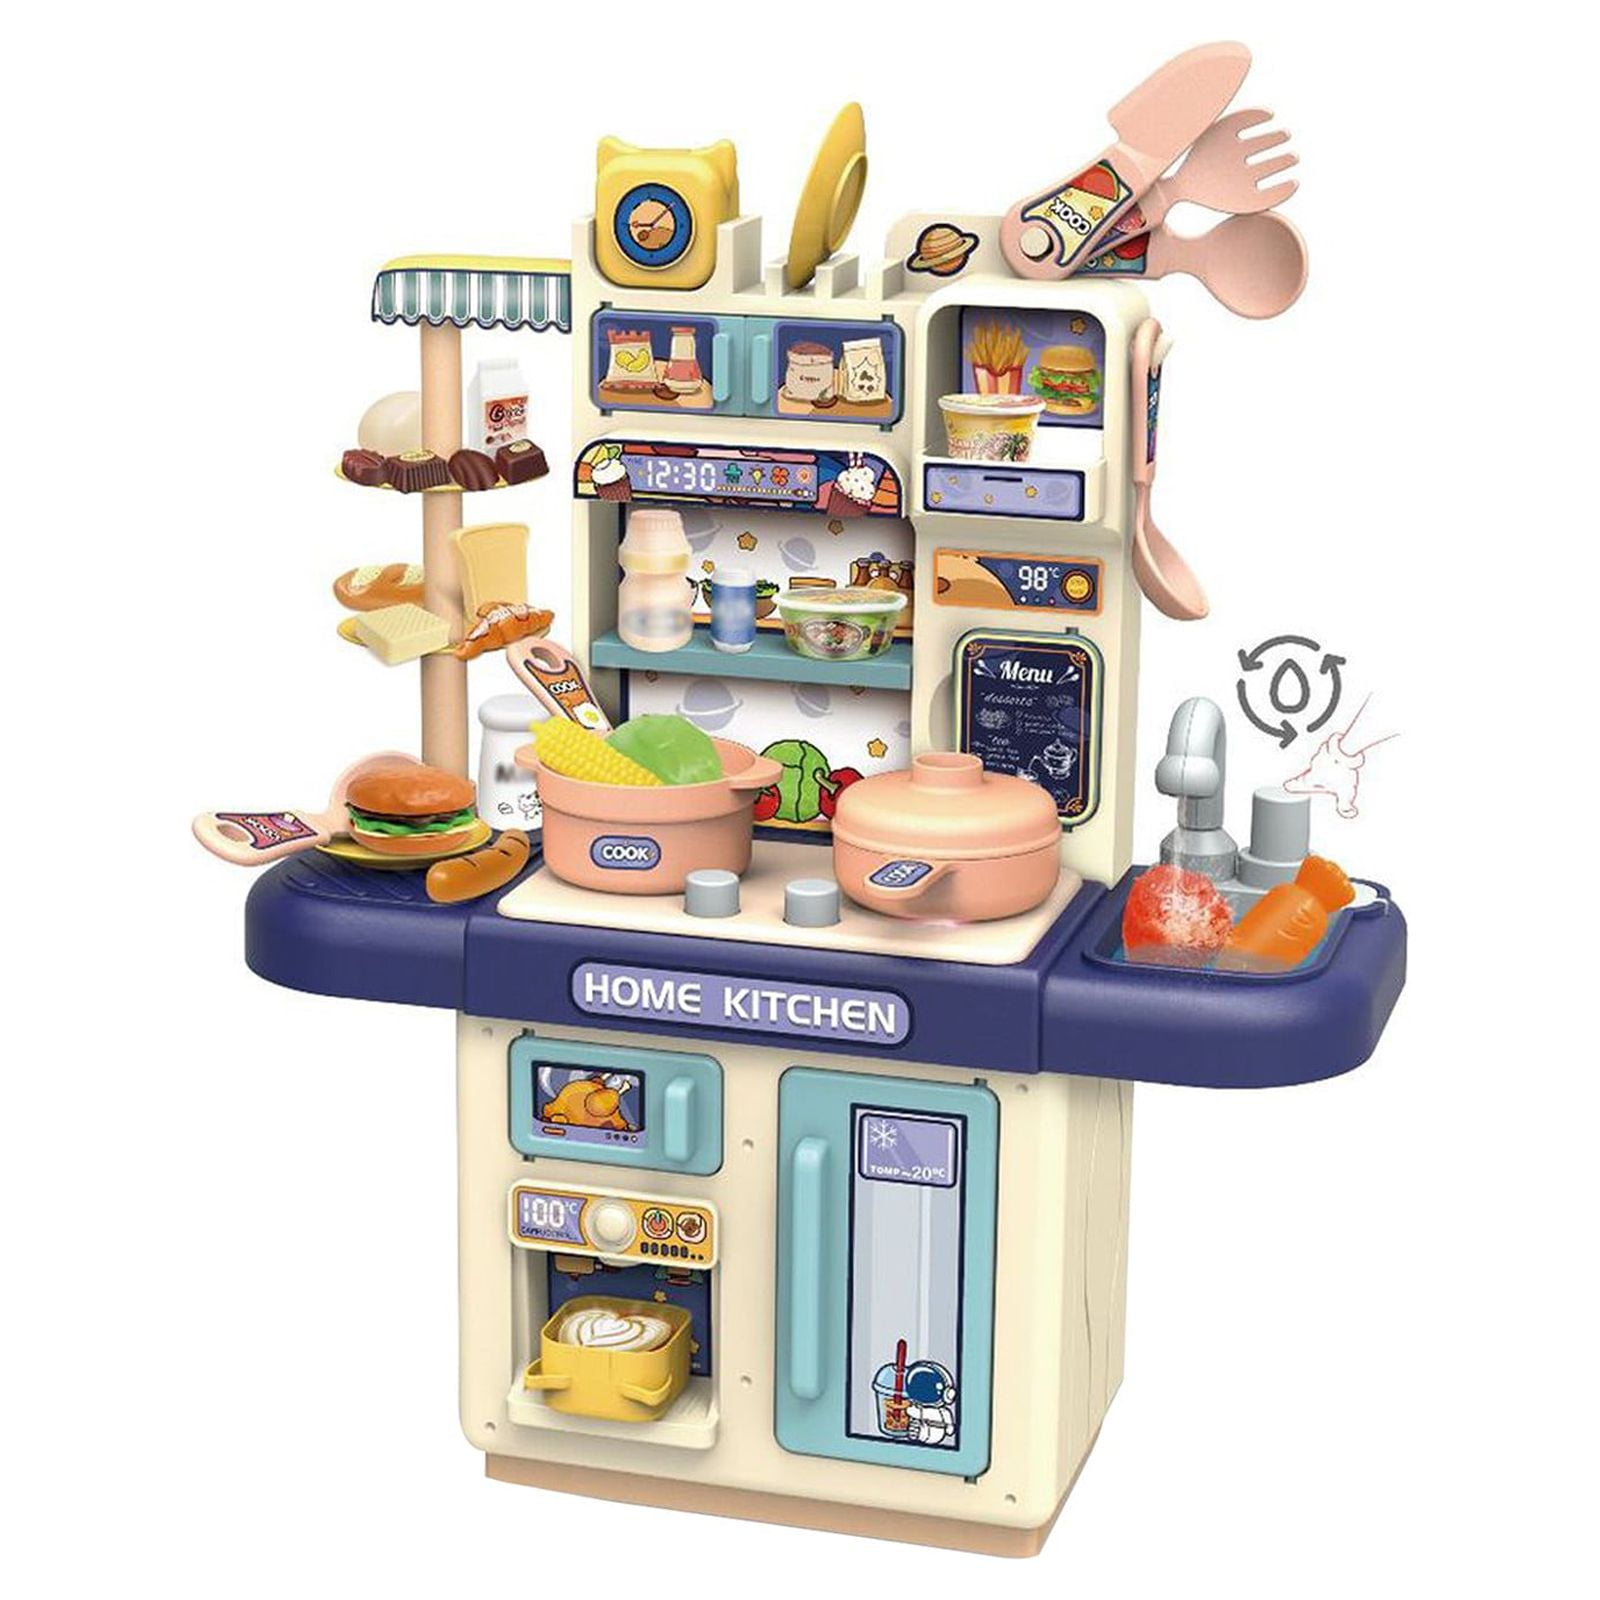 Children's Mini Kitchen Complete Cooking Girl Small Kitchen Set